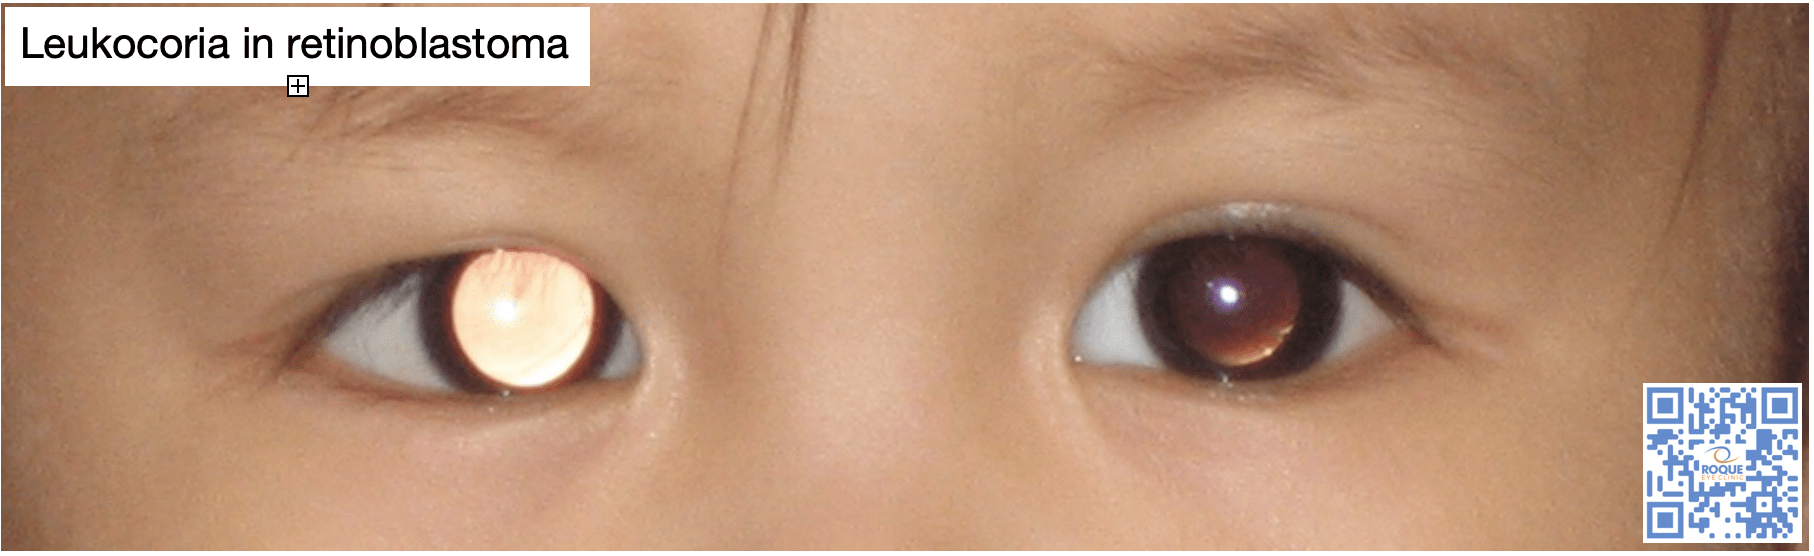 Leukocoria in retinoblastoma